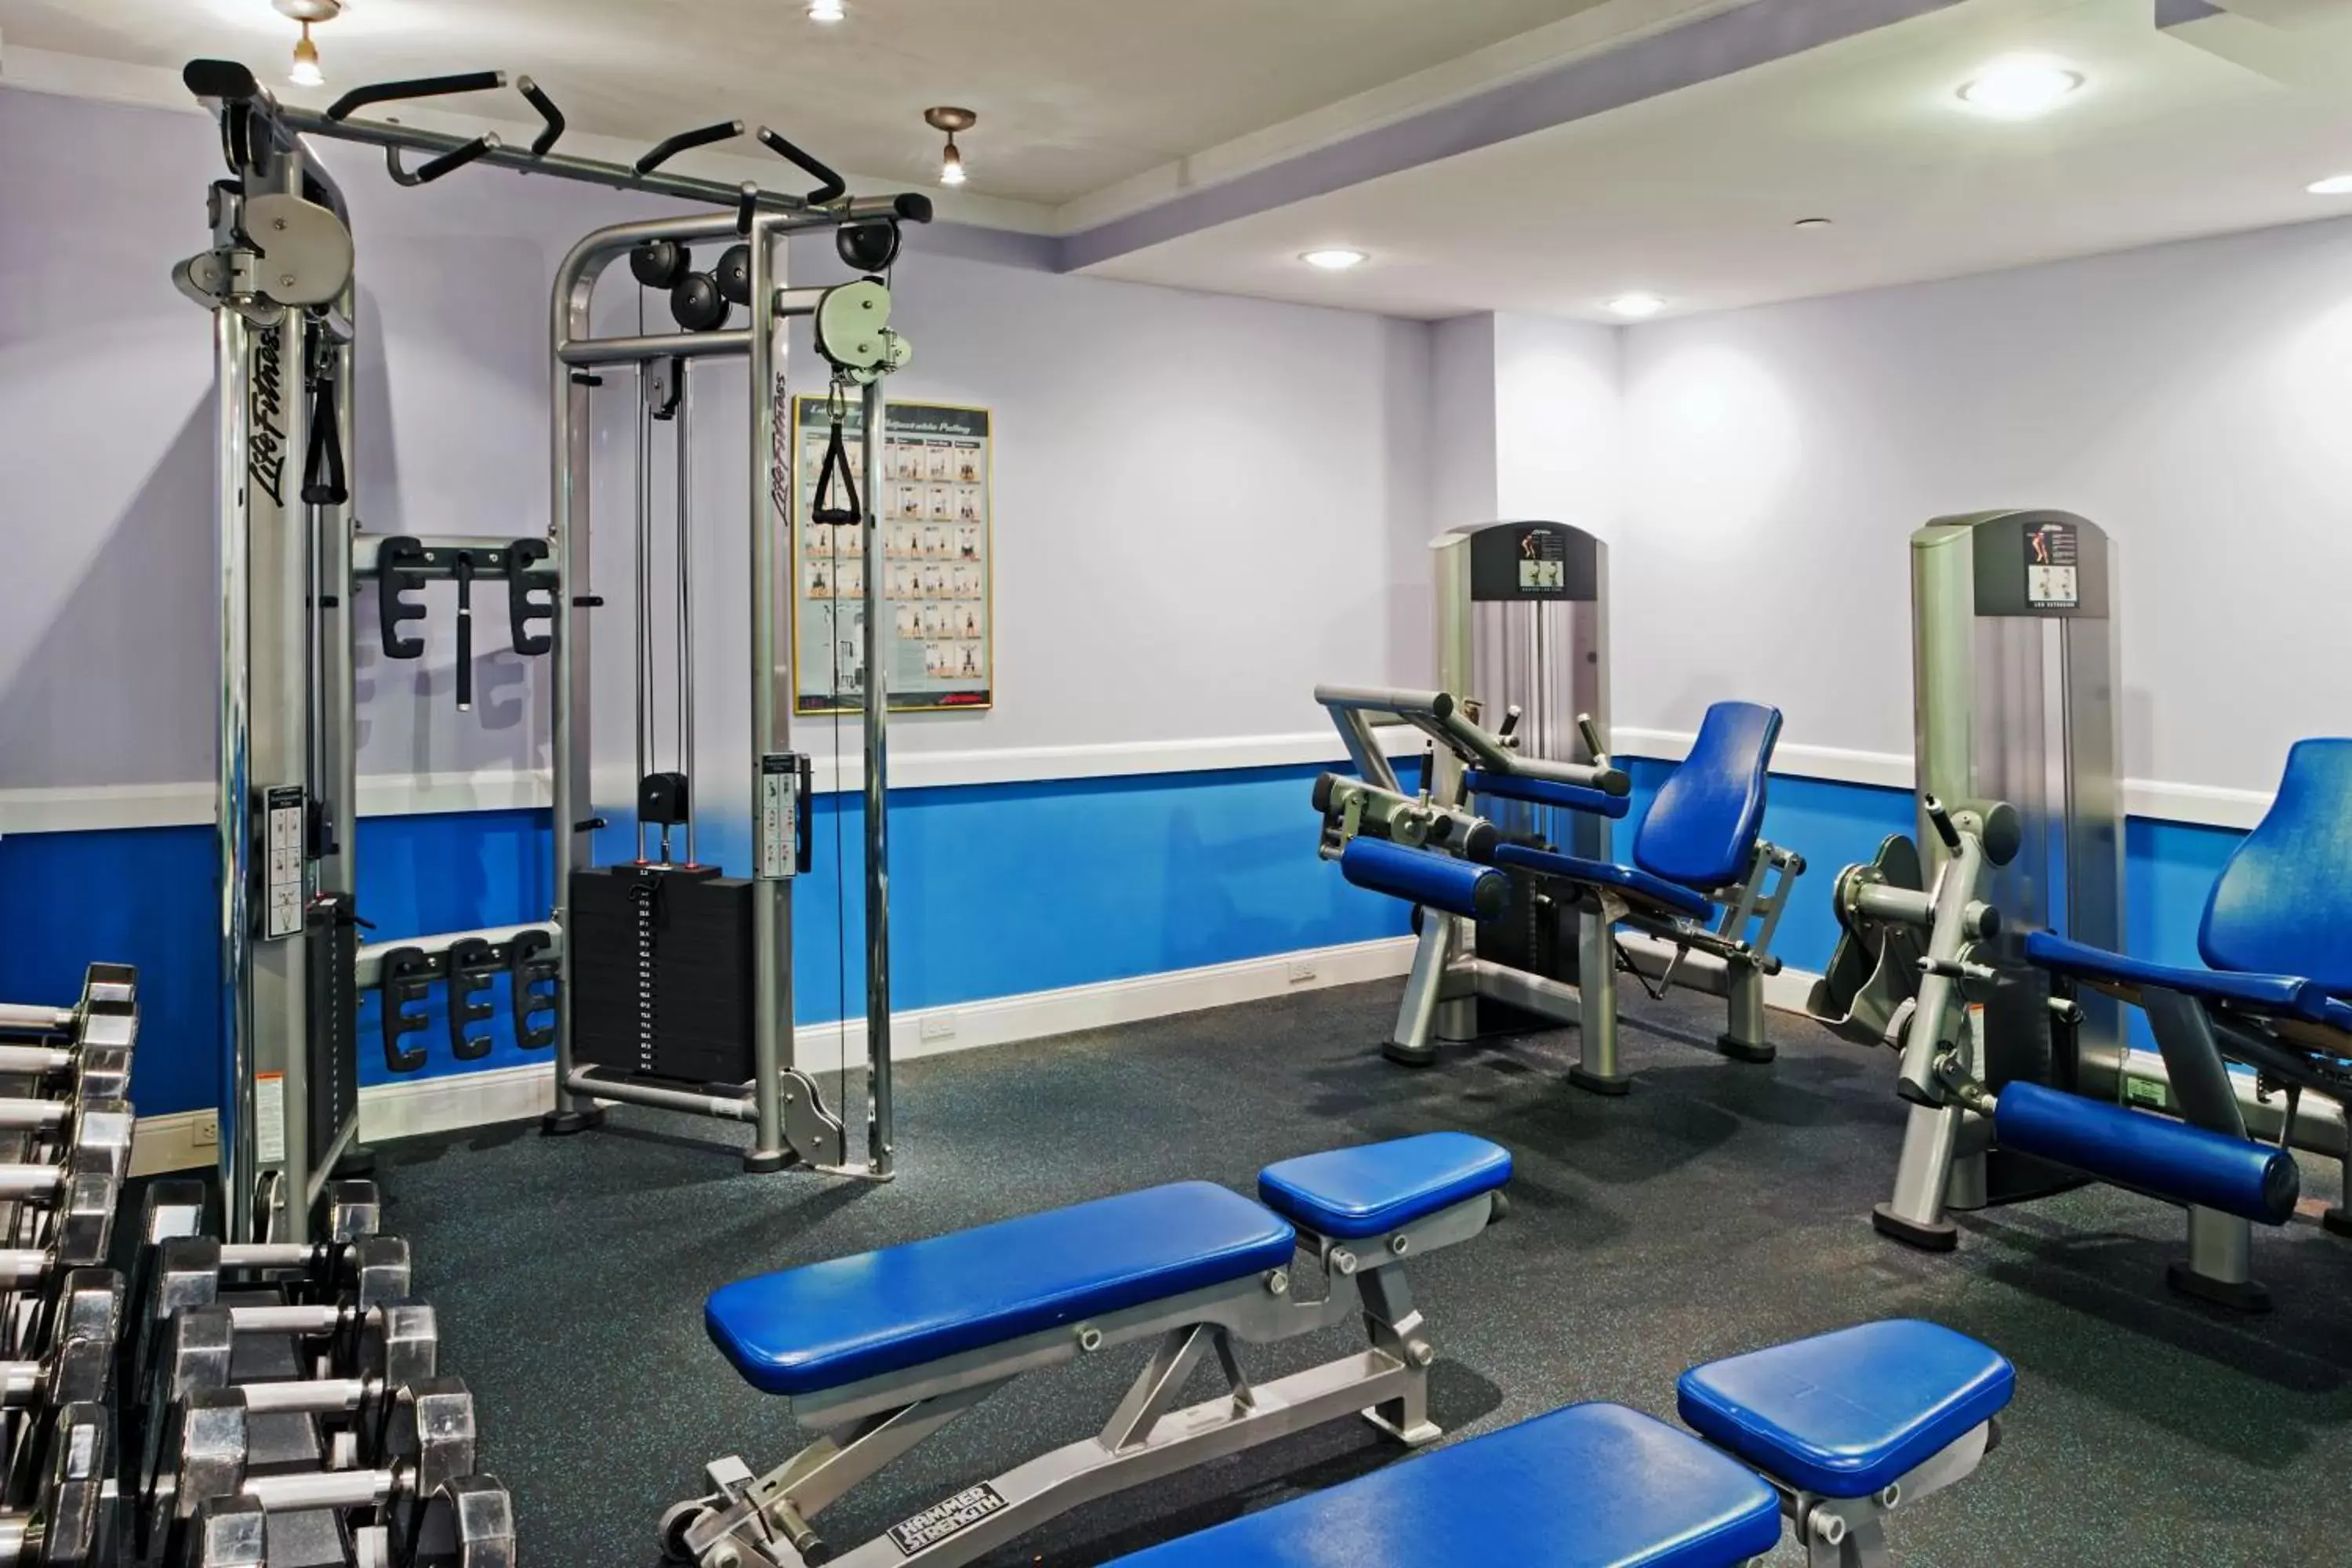 Fitness centre/facilities, Fitness Center/Facilities in Hamilton Hotel - Washington DC